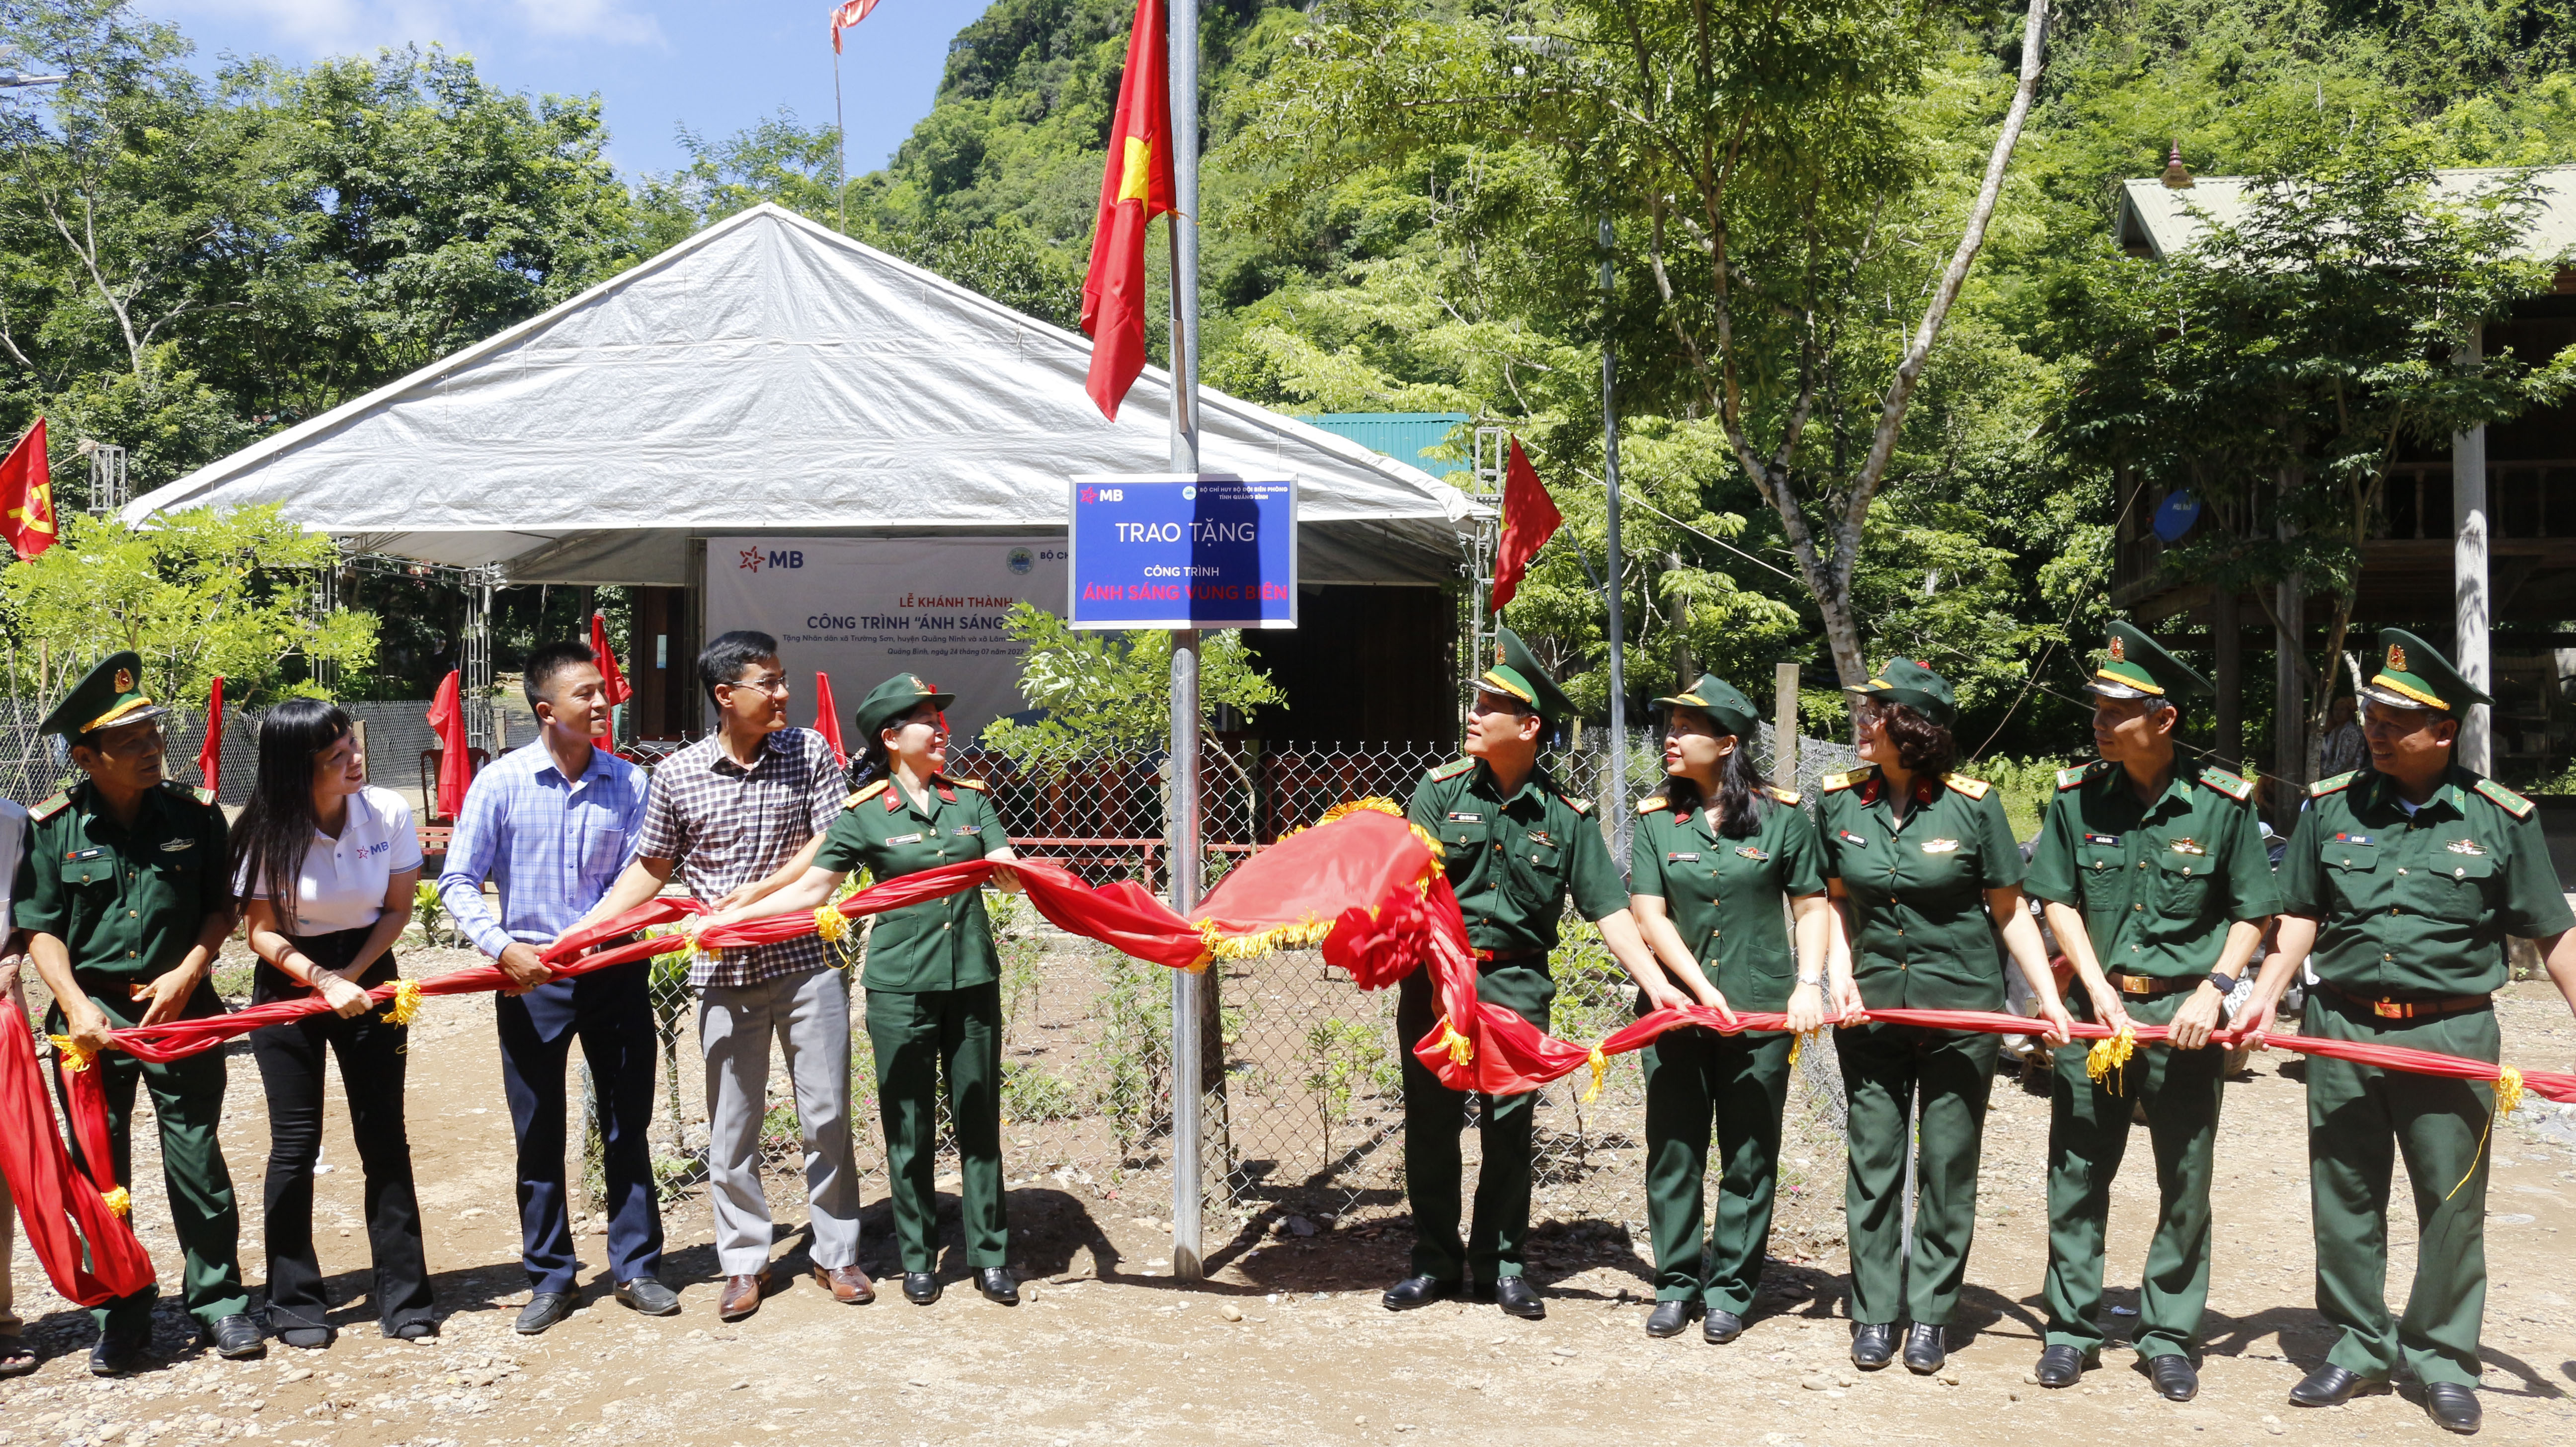 Lãnh đạo Bộ Chỉ huy BĐBP tỉnh và đơn vị tài trợ Ngân hàng TMCP Quân đội cắt băng khánh thành công trình “Ánh sáng vùng biên” trên địa bàn xã Trường Sơn (Quảng Ninh).